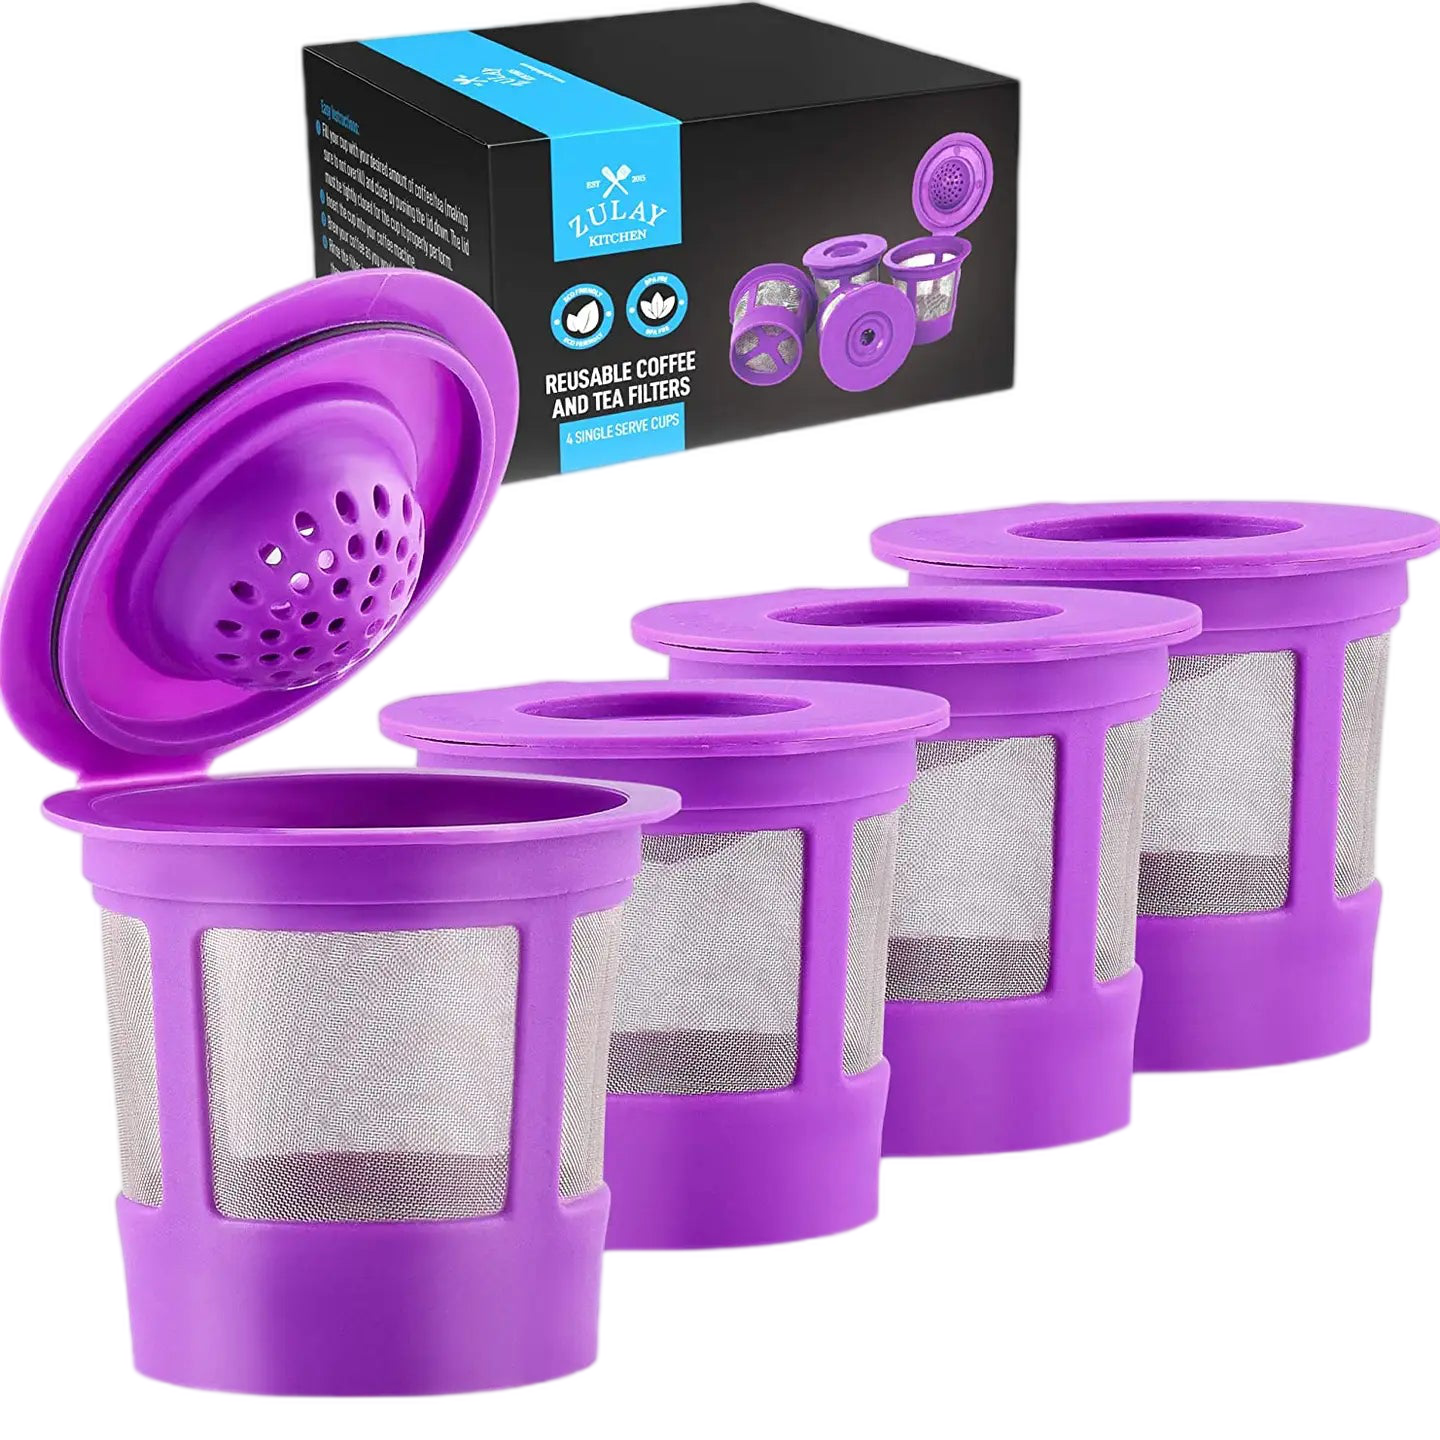 Reusable Keurig Cups Coffee Filters (4-pack)